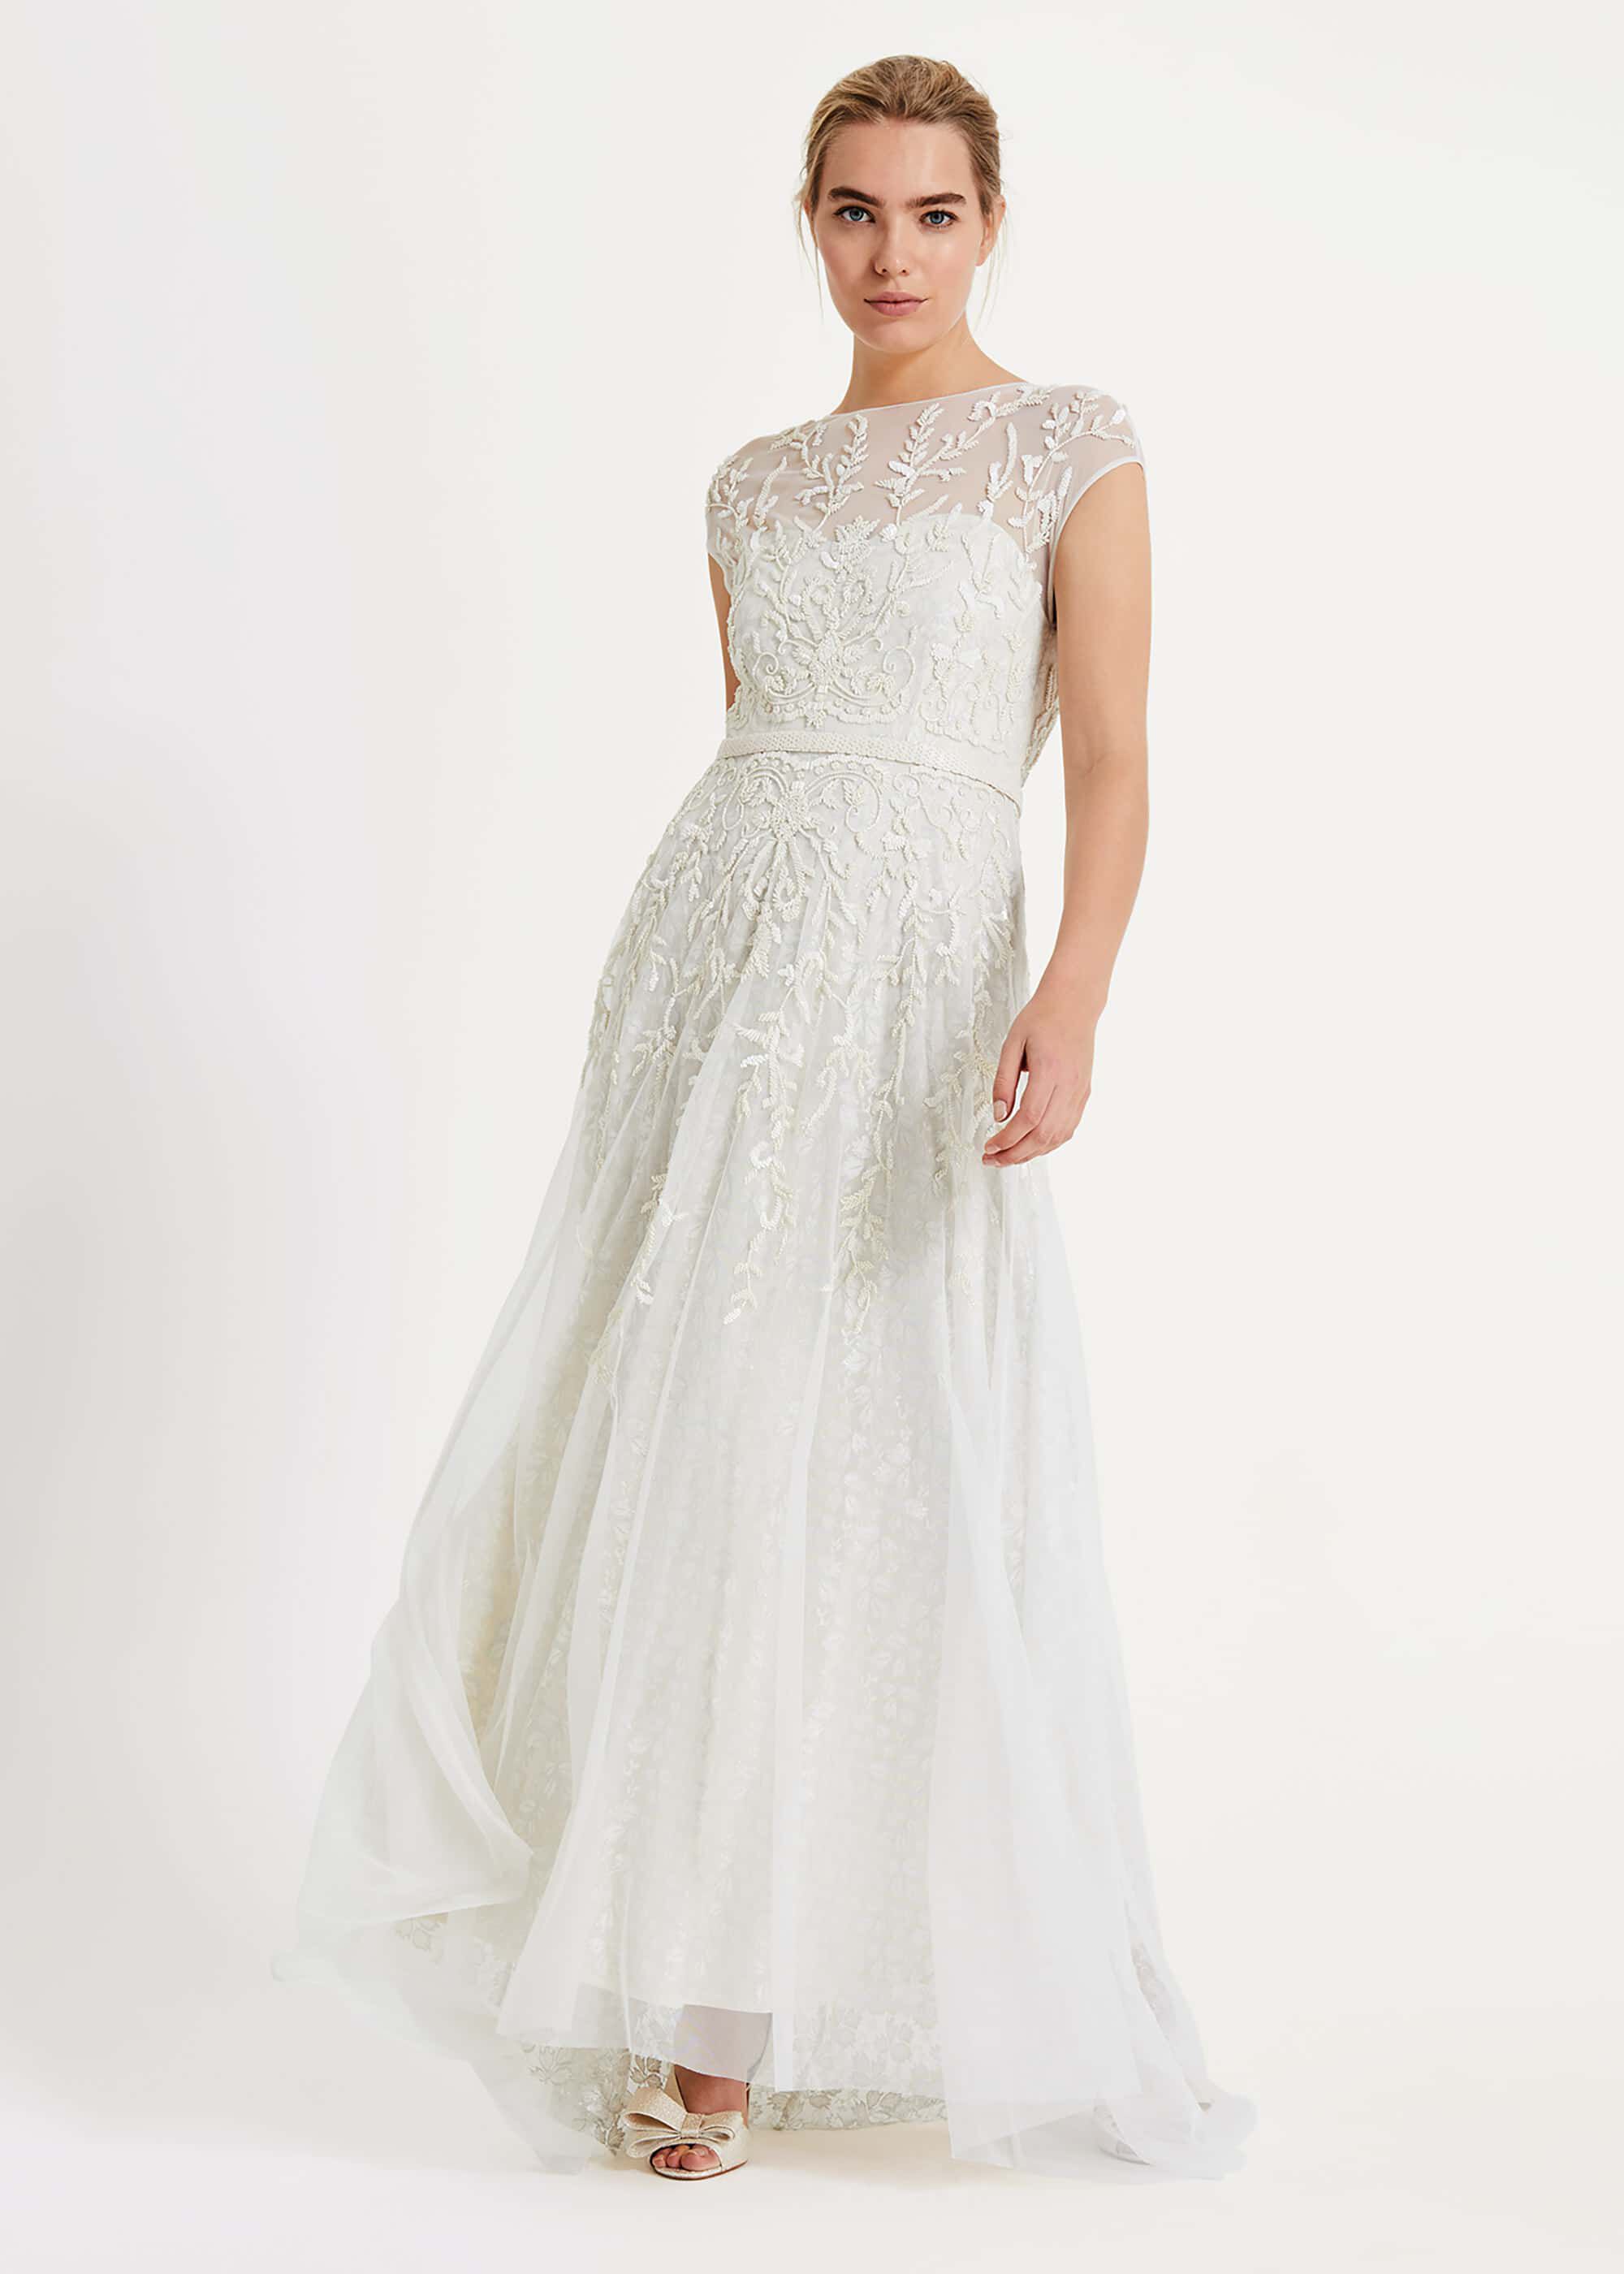 Mylee Embellished Wedding Dress | Phase ...